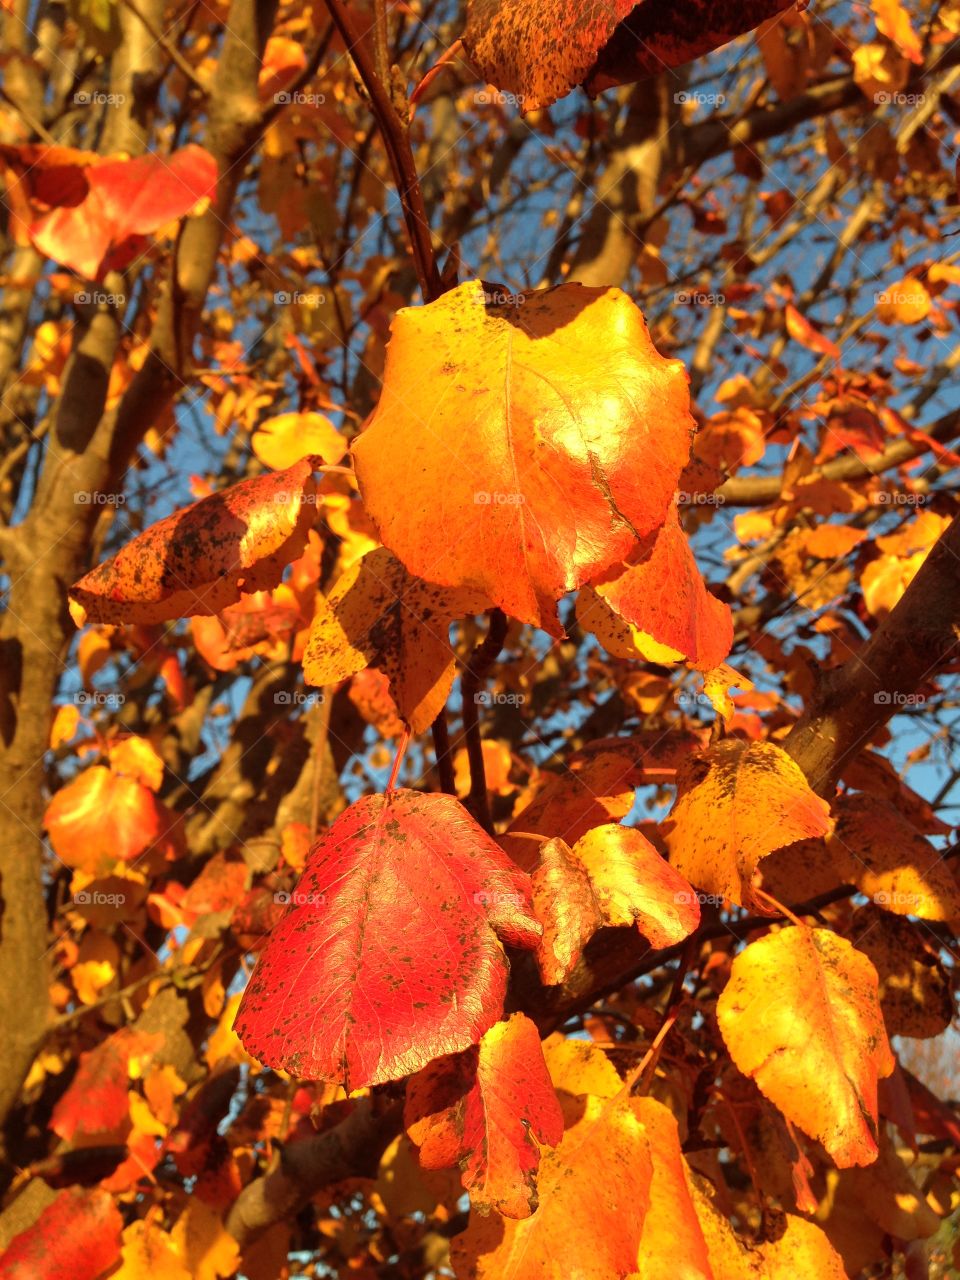 Fall autumn Bradford pear tree